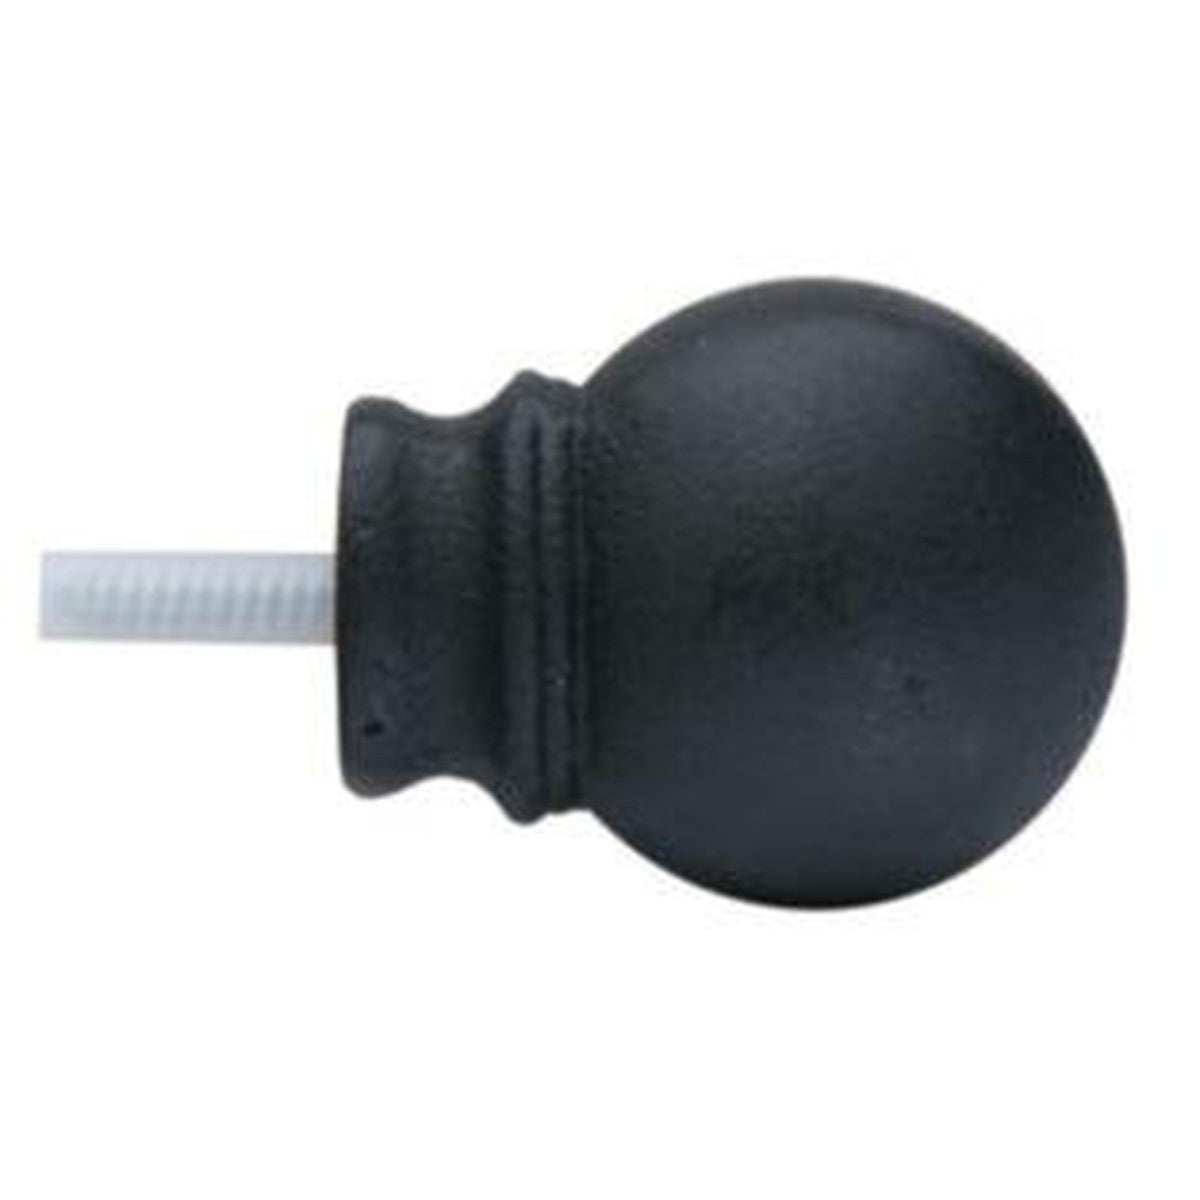 Petite Modern Ball Finial With Plug - 770 - Black - Alan Richard Textiles, LTD Kirsch Wrought Iron, Kirsch Wrought Iron Finials